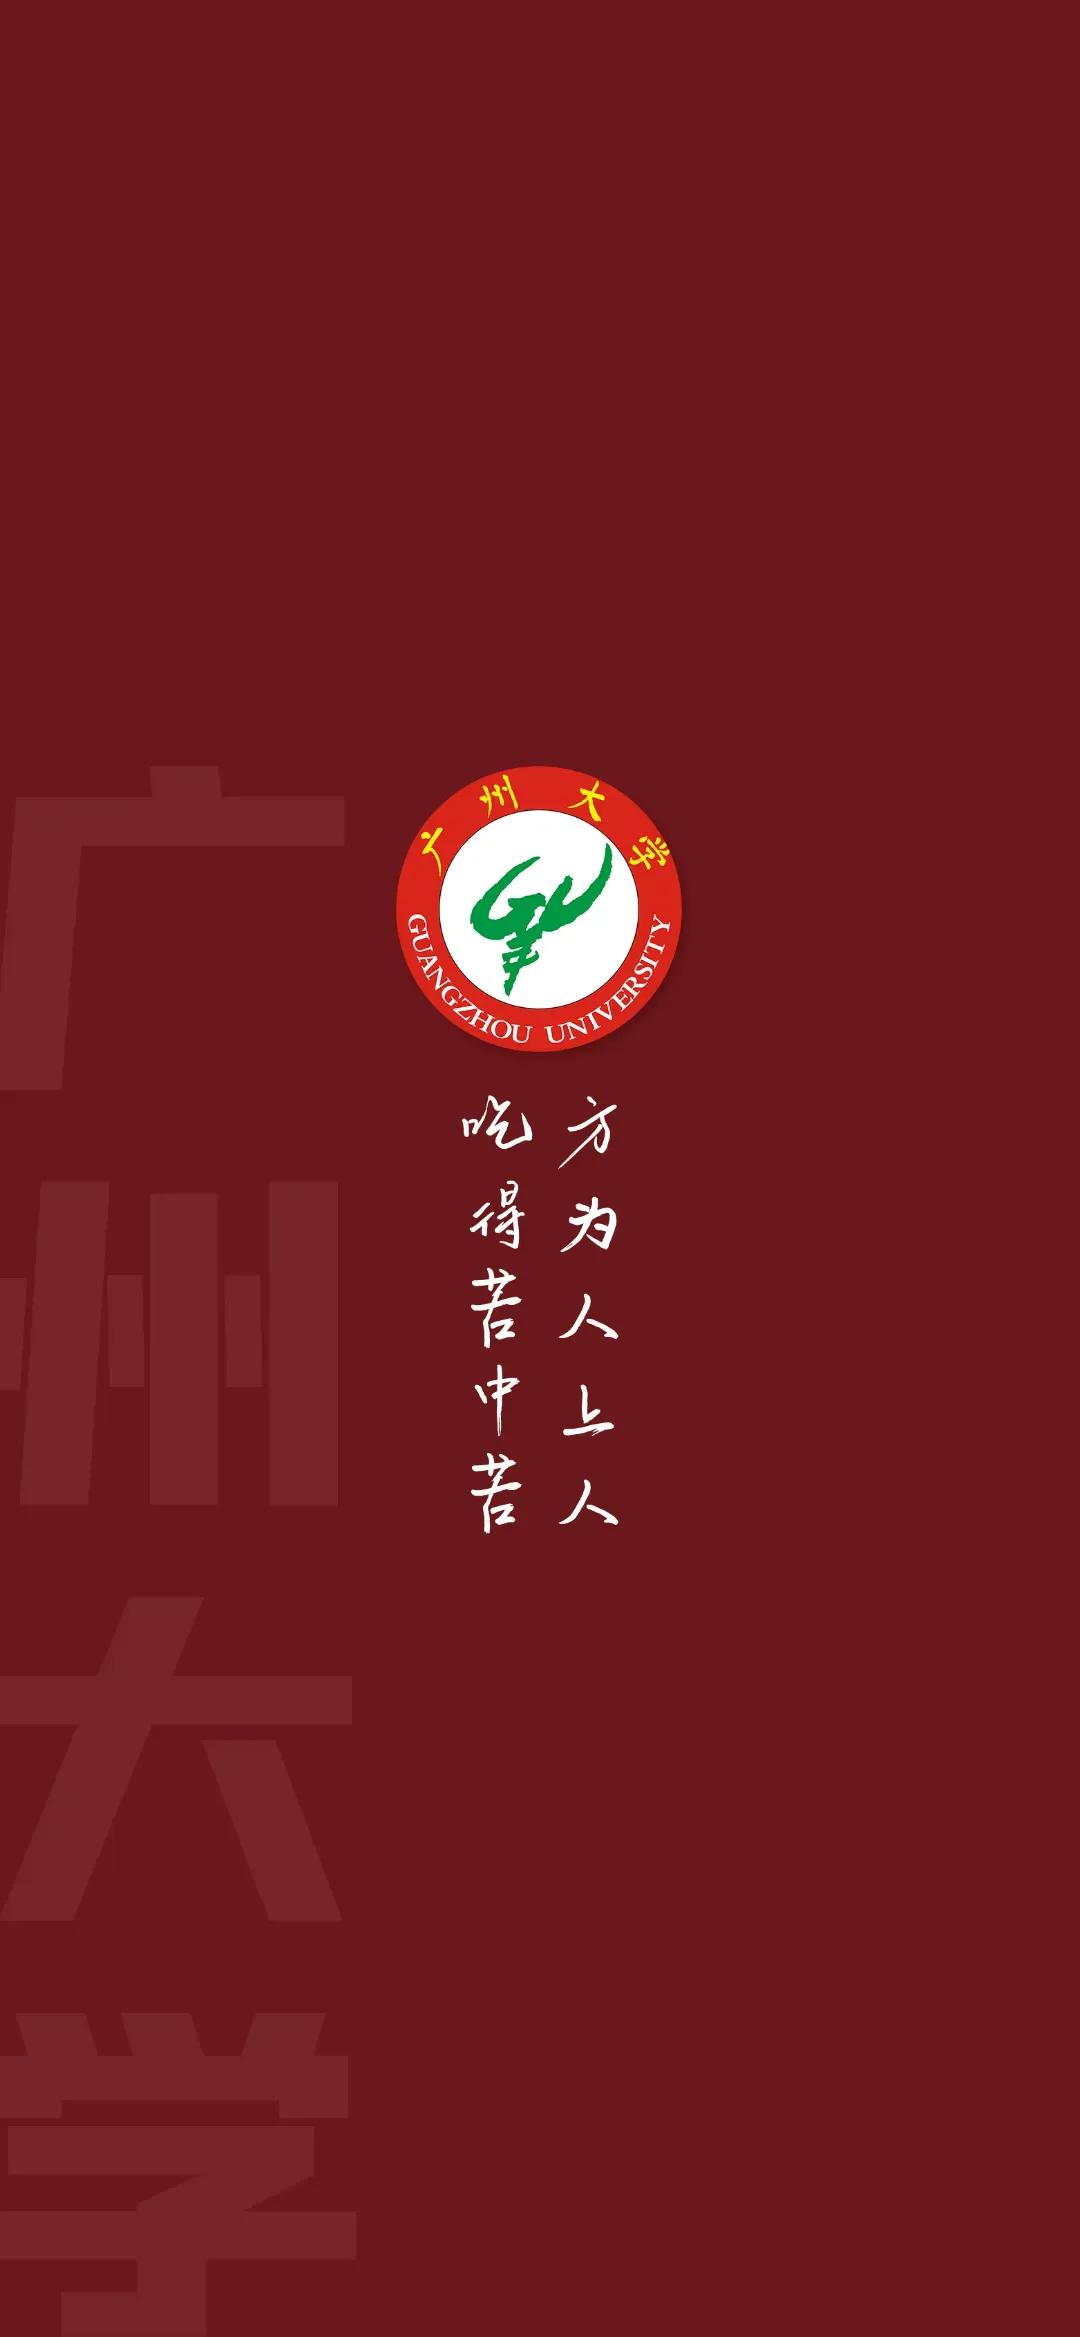 各大学校徽「广州各大学校徽」